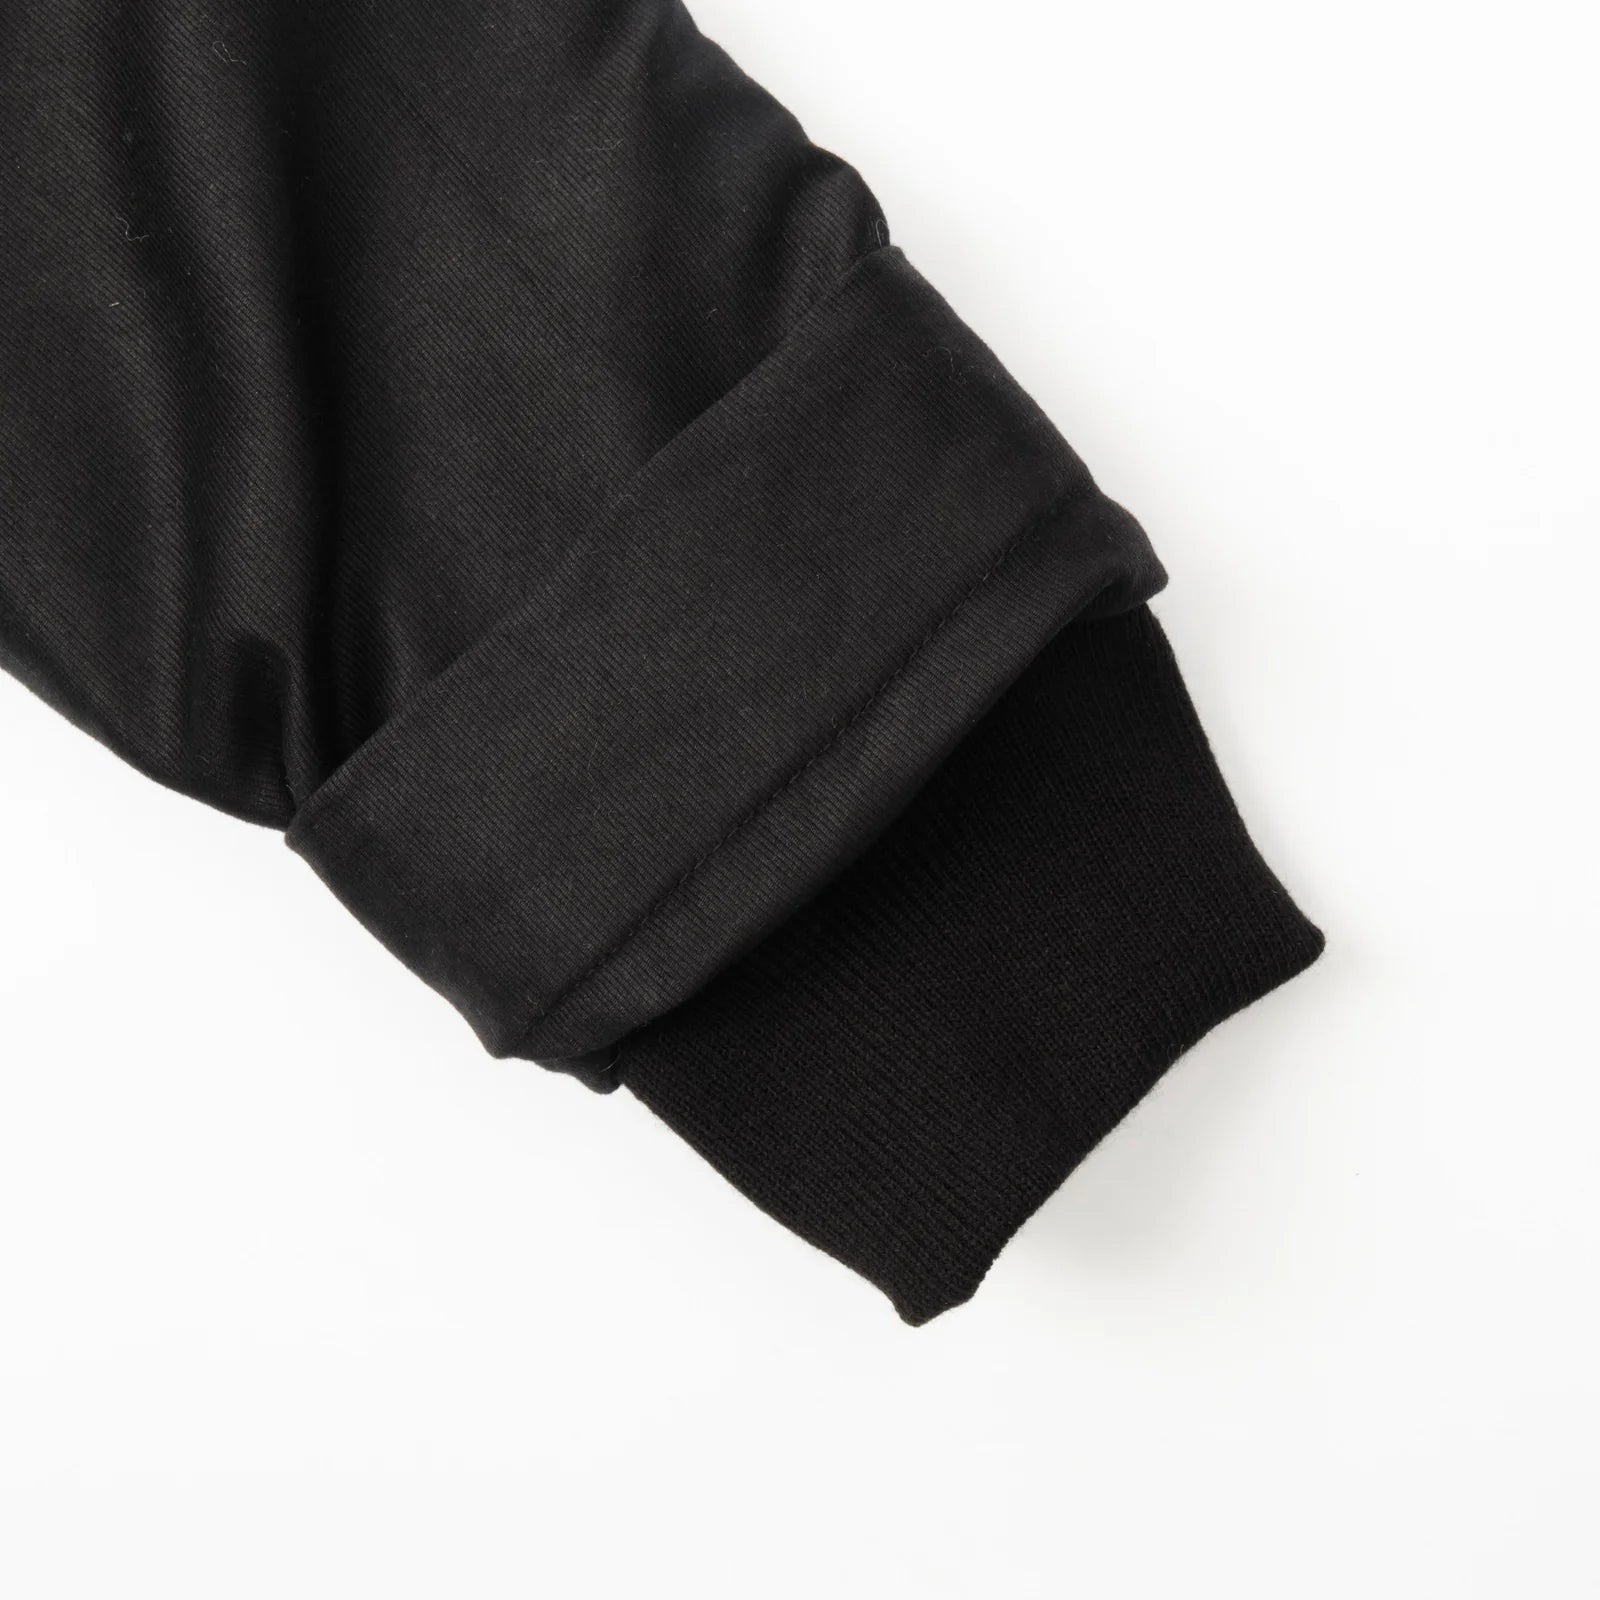 Freenote Cloth Mariner Jacket Heavy - Black